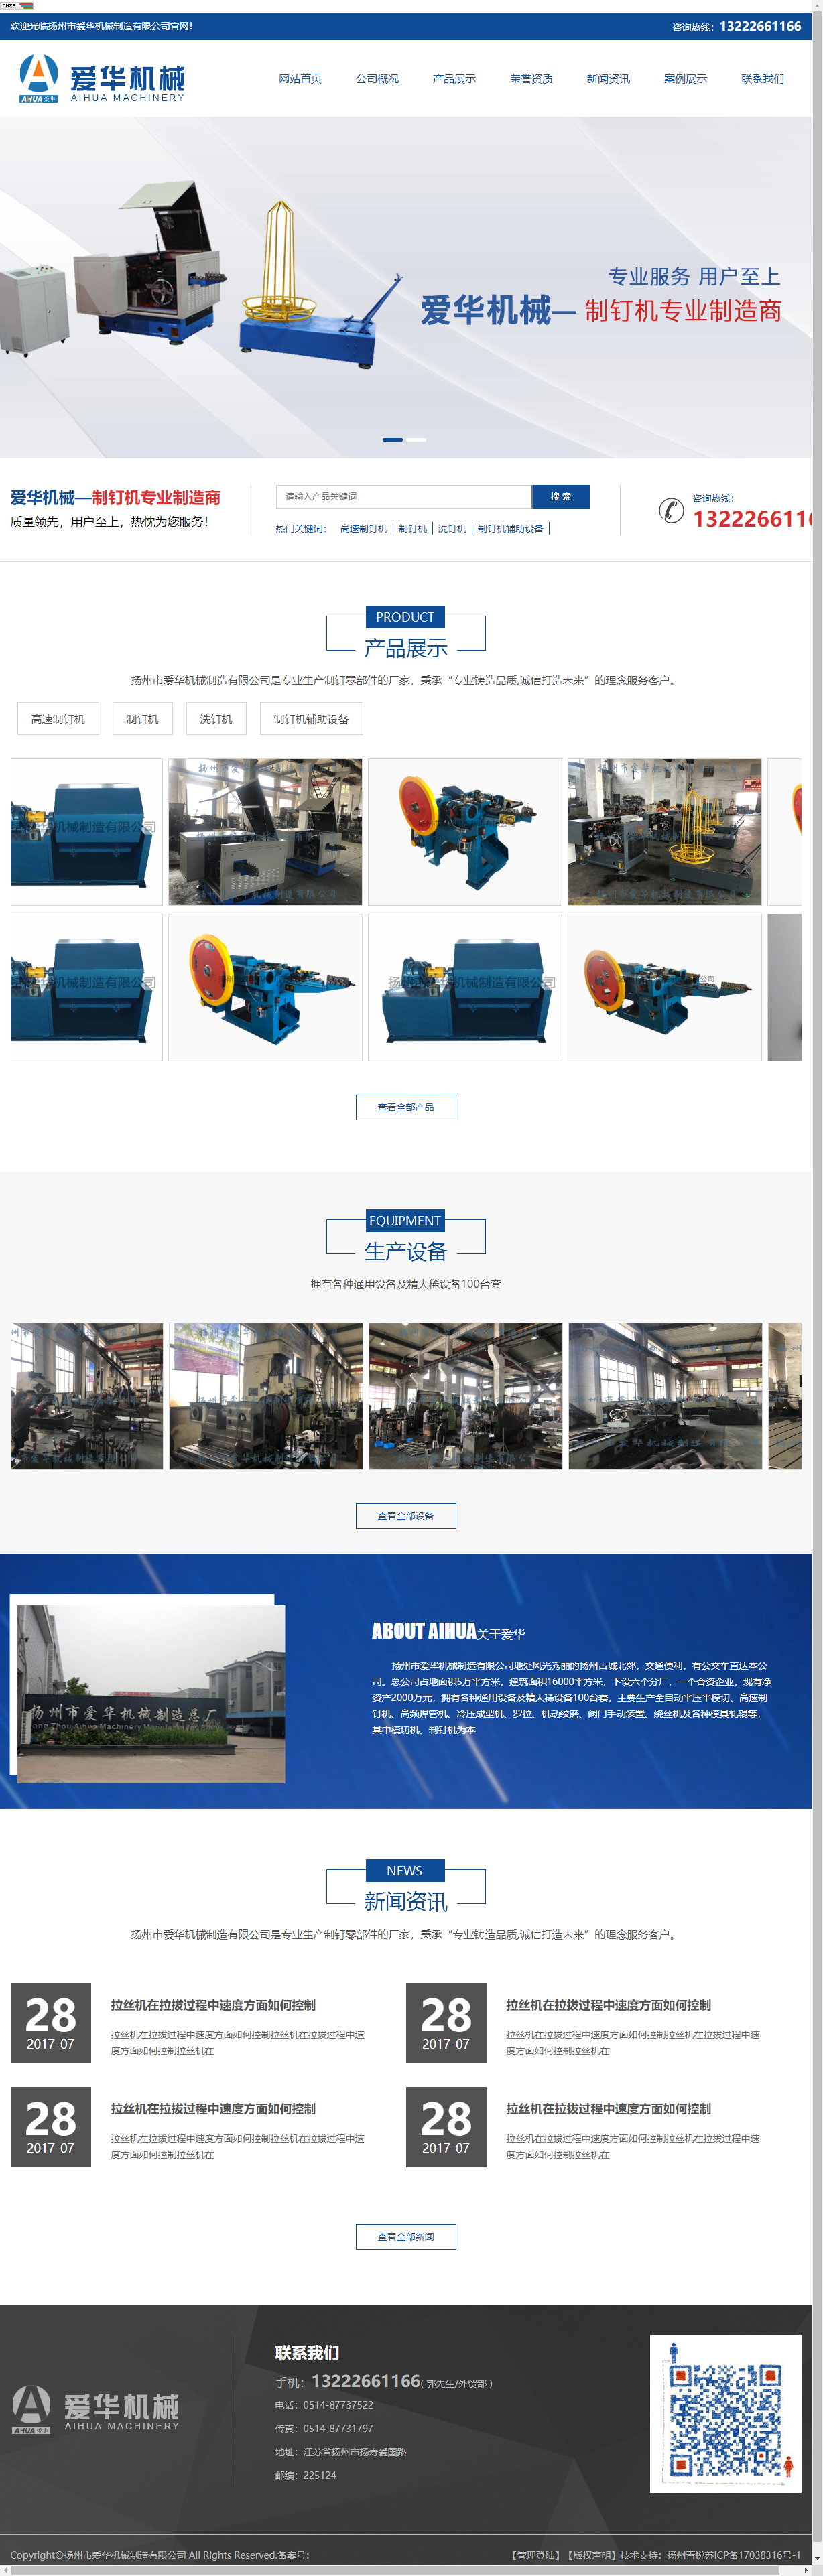 扬州市爱华机械制造有限公司网站案例